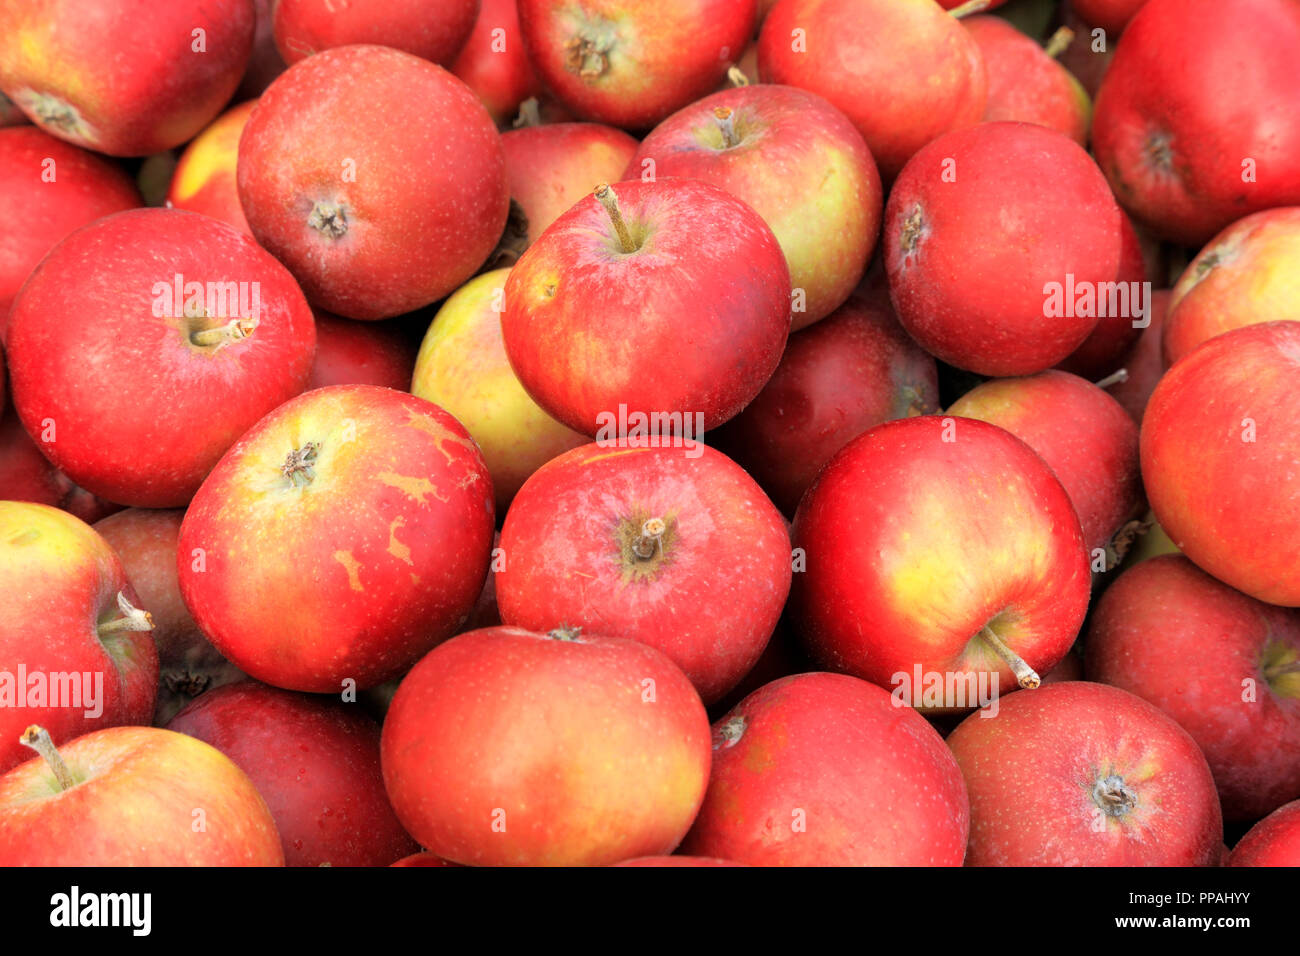 Apple, mele, Ingall Rosso di, farm shop, display, malus domestica, commestibili, frutta Foto Stock